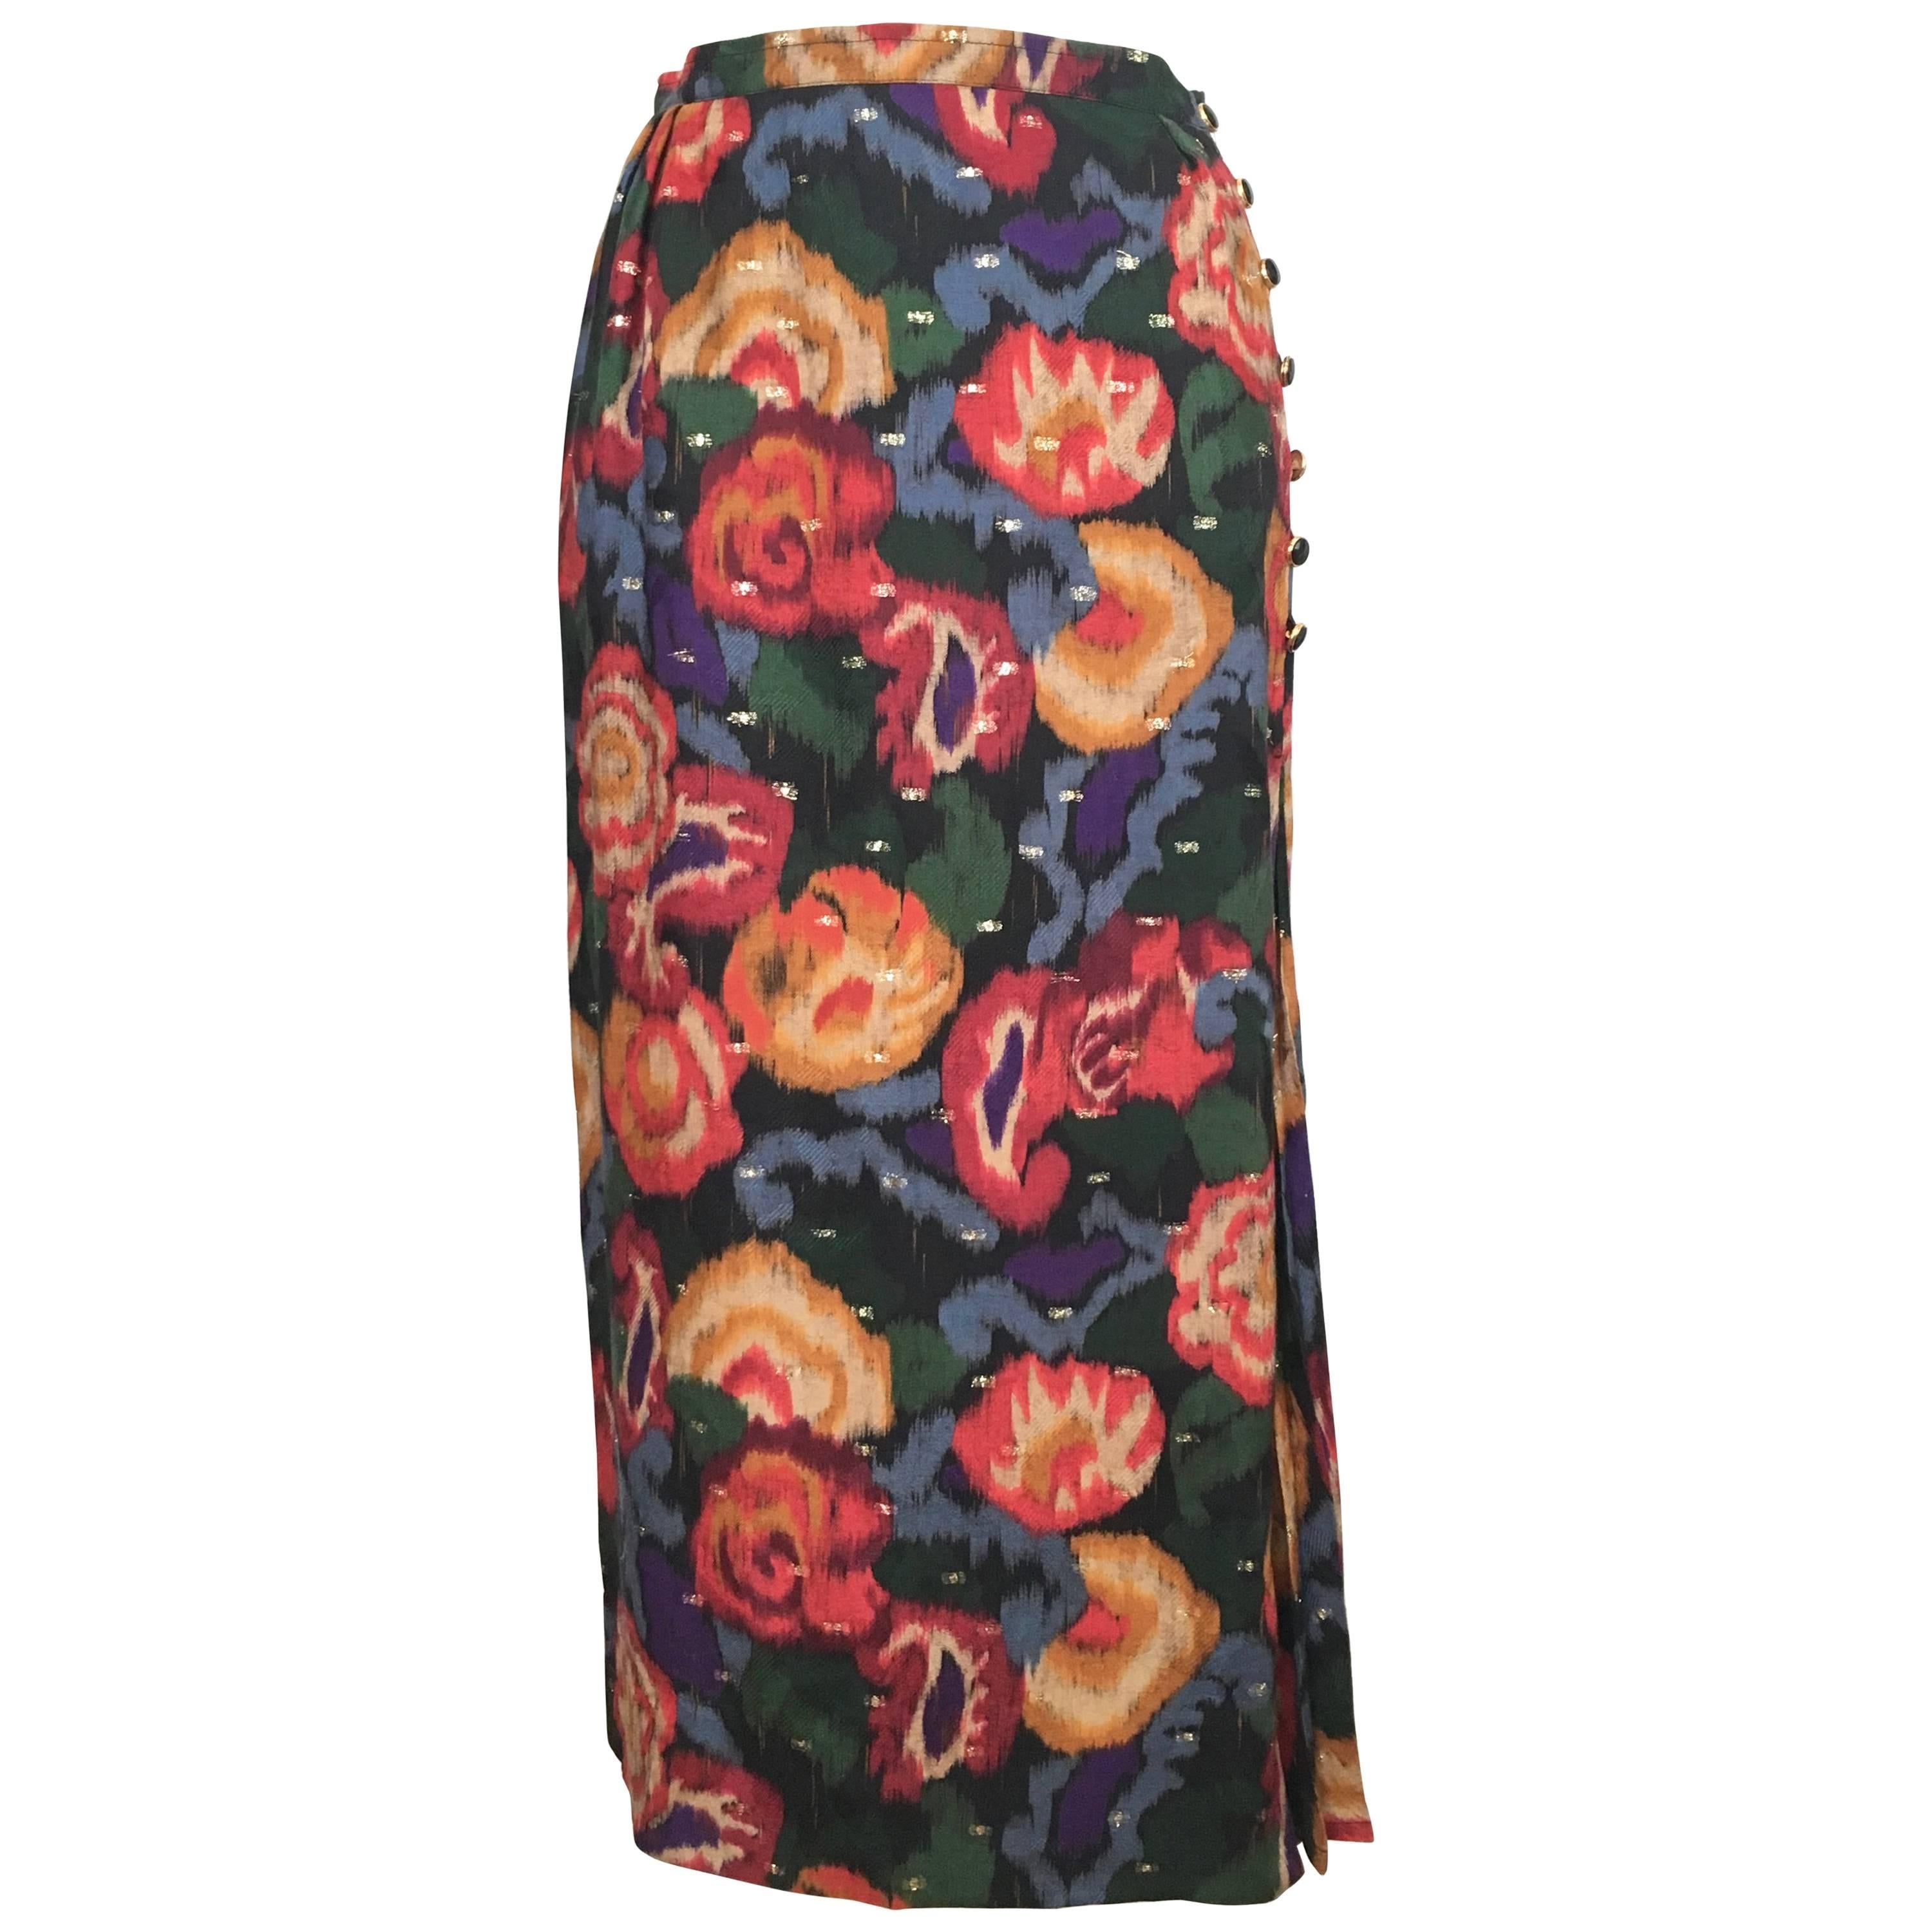 Emanuel Ungaro Parallele Paris 1980s Wool / Silk Long Floral Skirt Size 4/6. For Sale